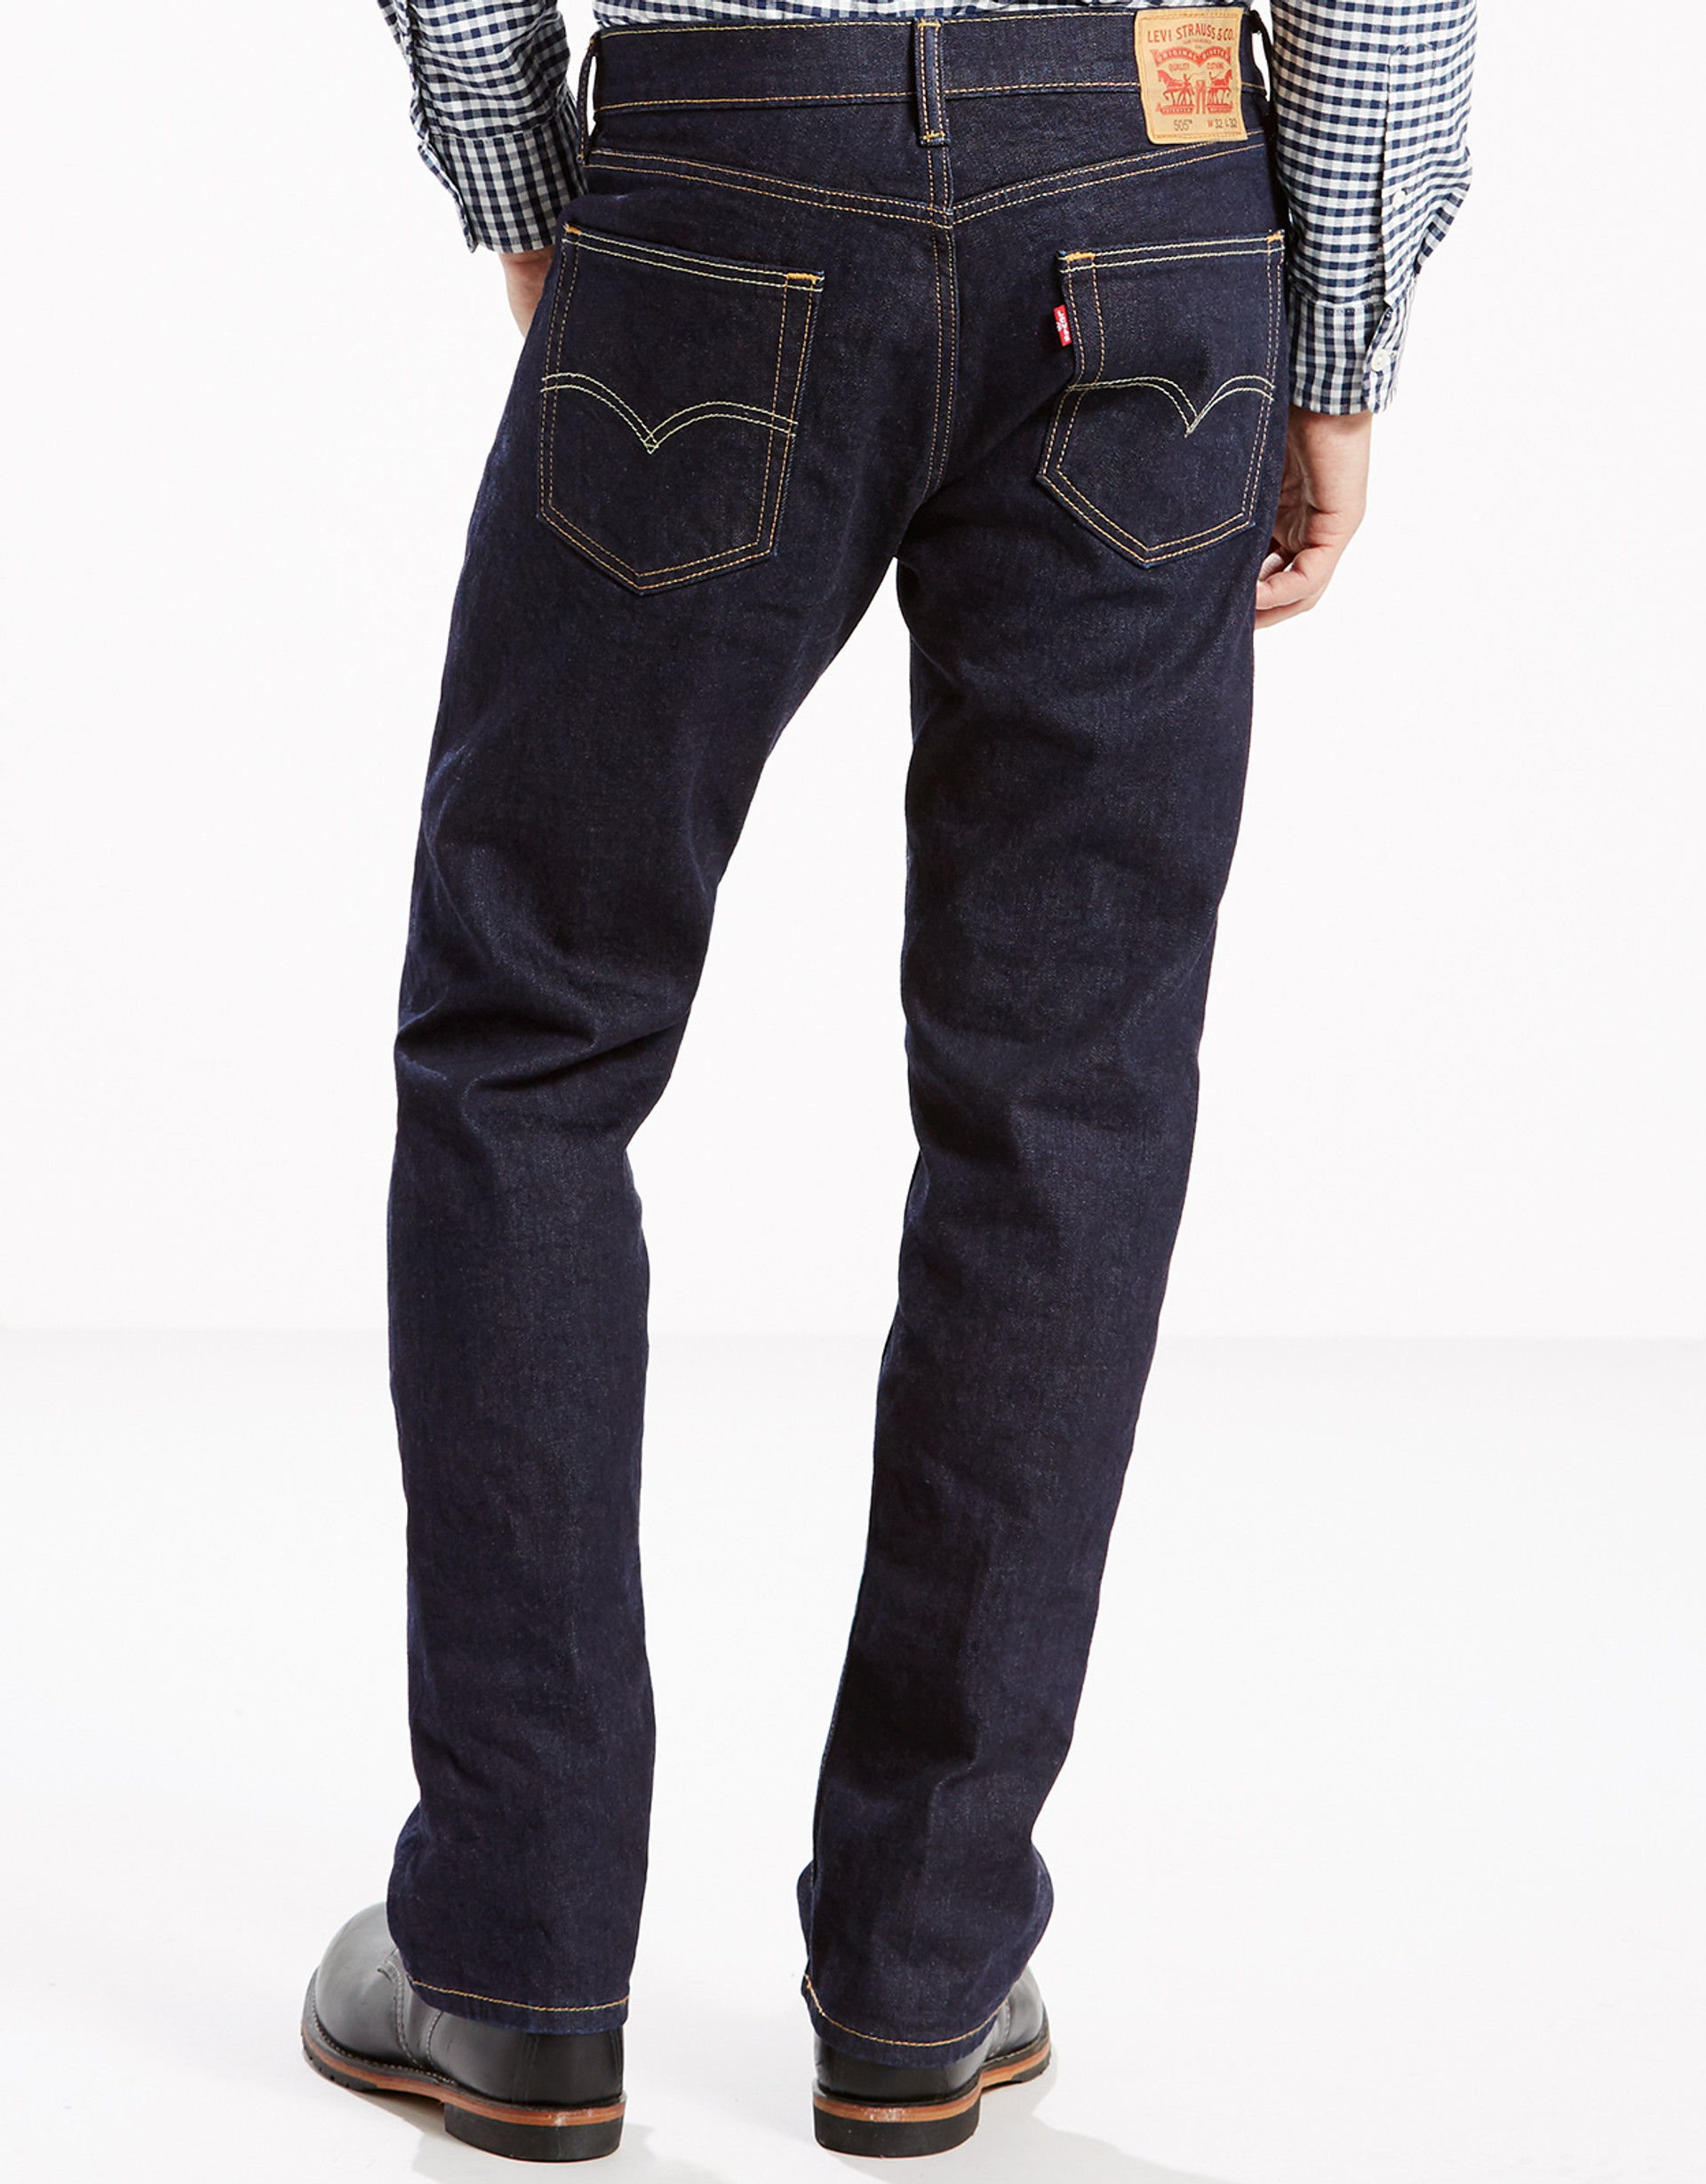 Levi's® Classic Jeans - Langston's